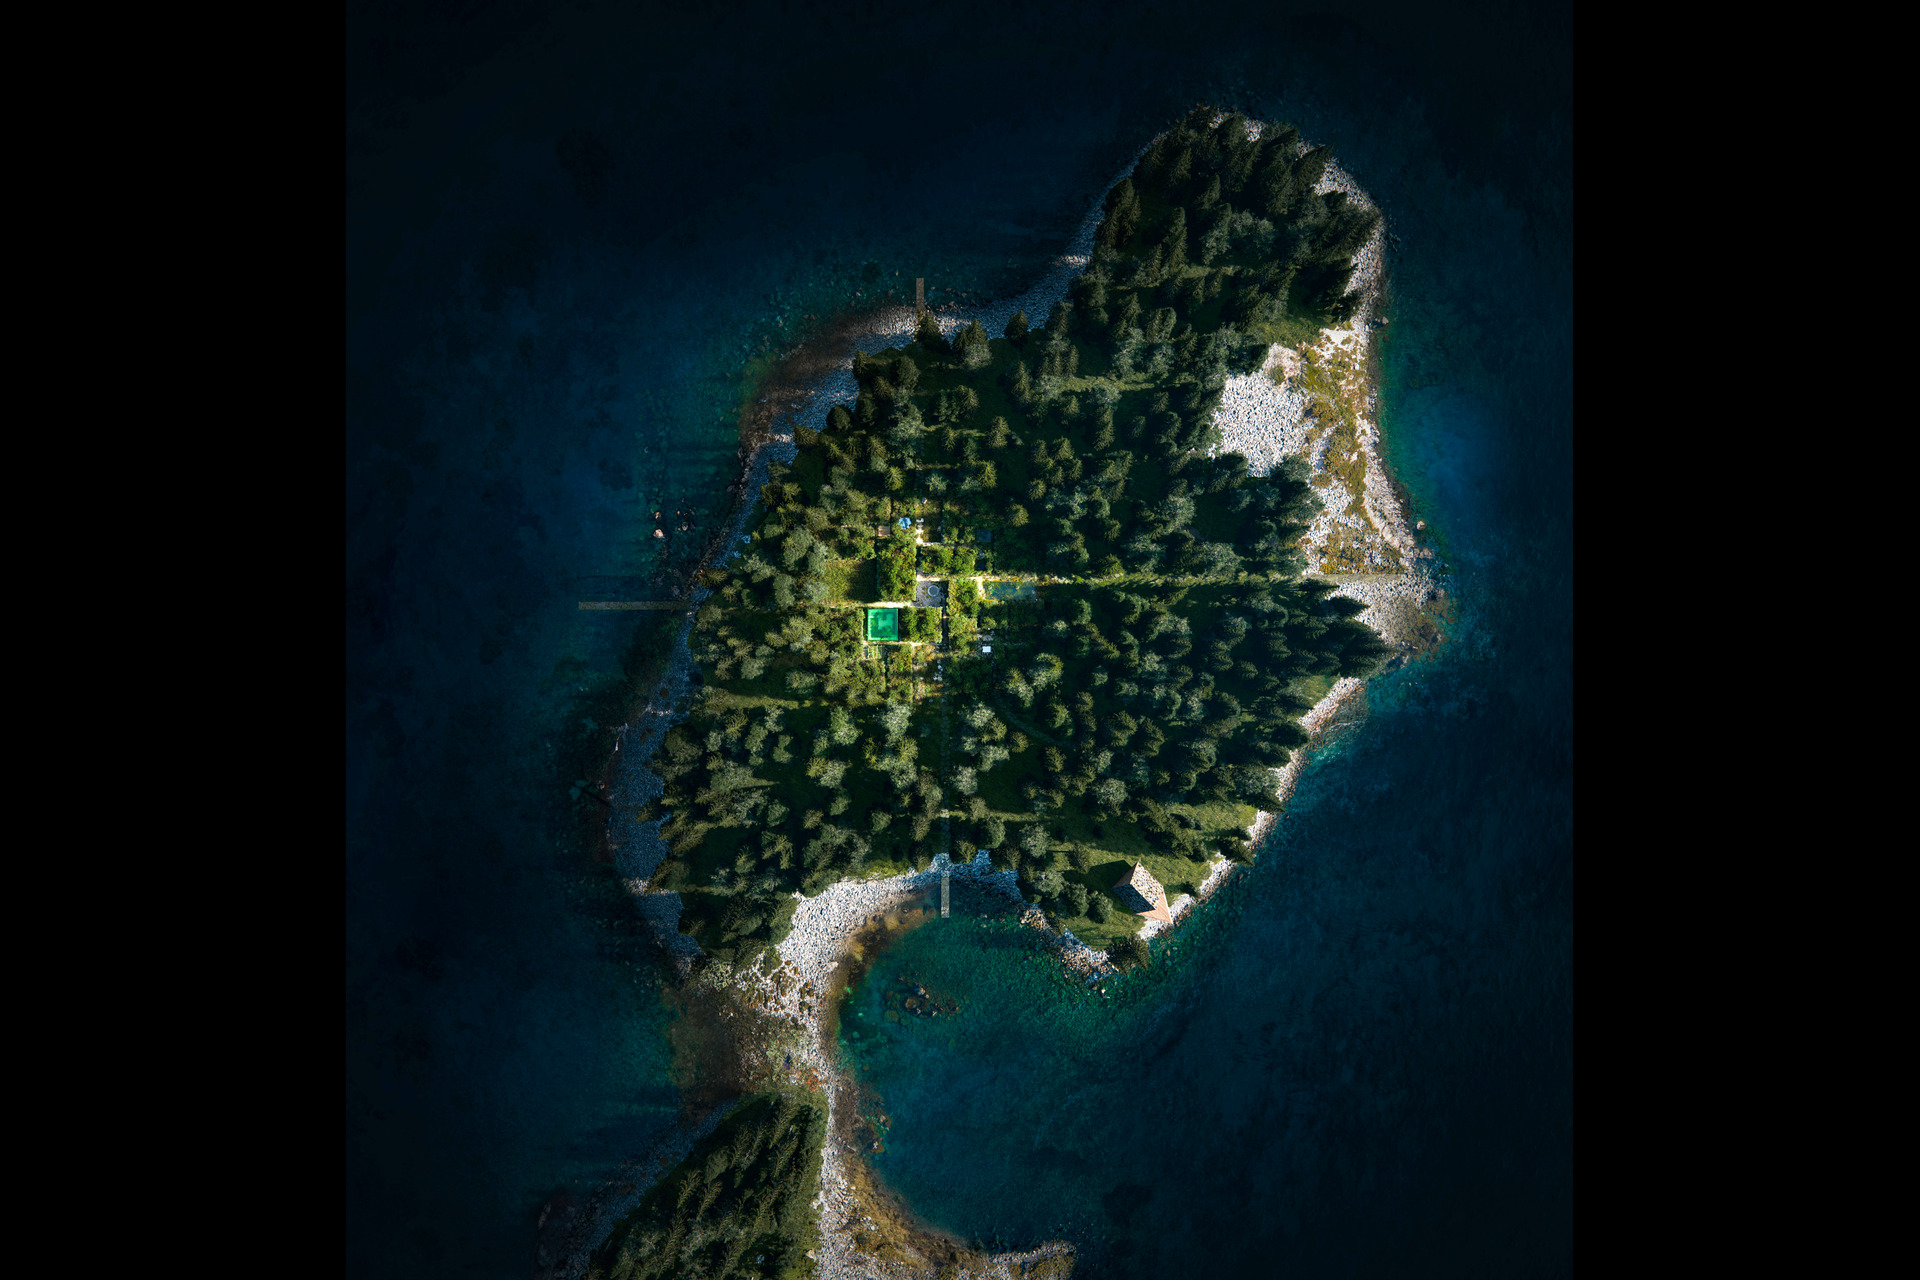 Ostrvo Vollebak: ostrvo van mreže